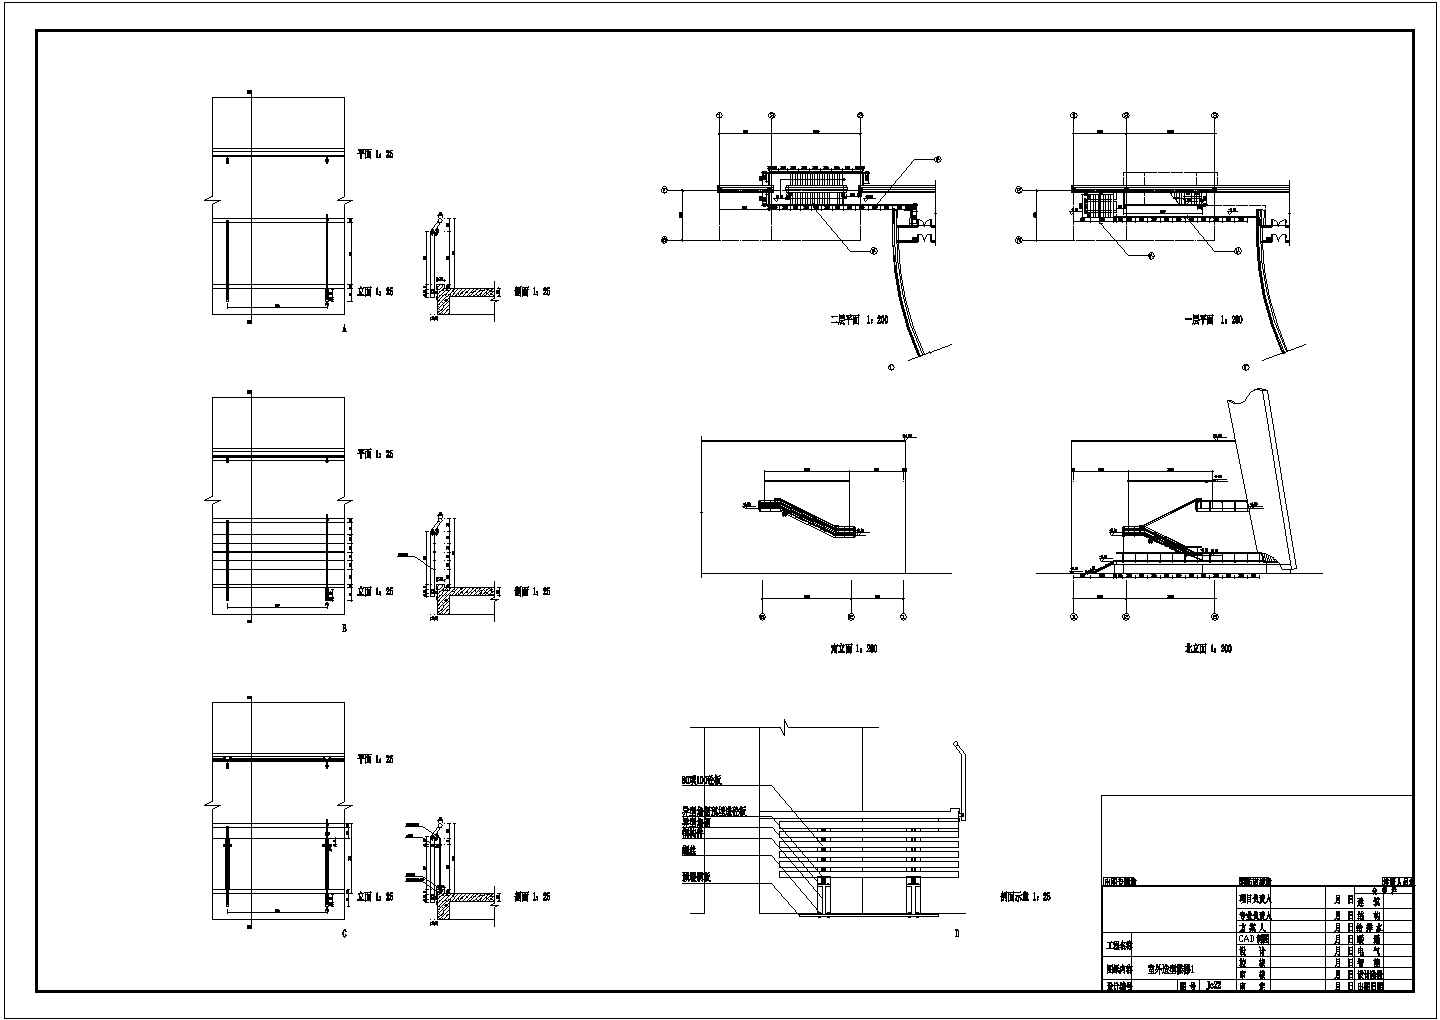 某2+2夹层扇型博物馆扩大工程CAD建筑初步设计方案图室外造型楼梯